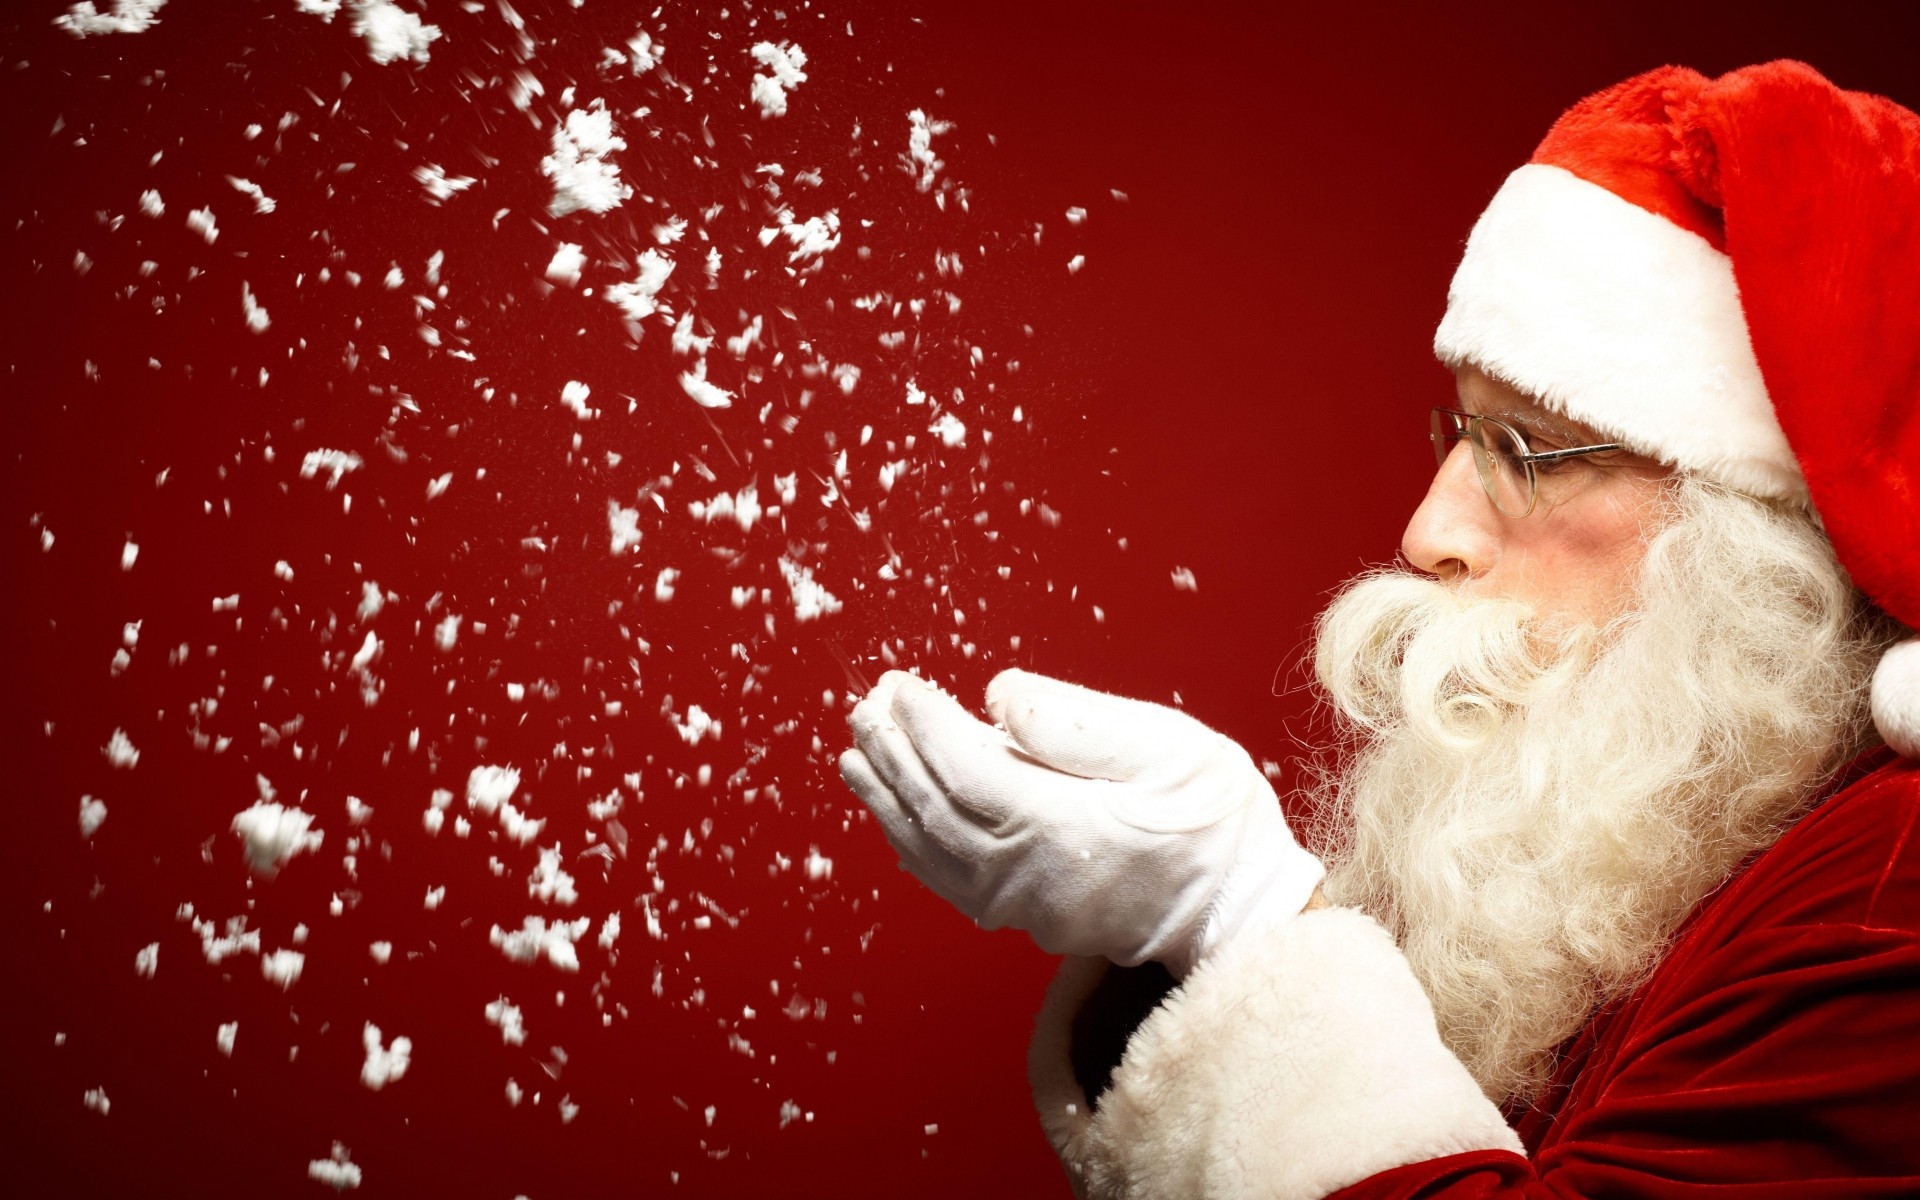 4344 tấm ảnh ông già Noel chui qua ống khói ngộ nghĩnh và hài hước trong mùa Giáng Sinh Mua bán hình ảnh shutterstock giá rẻ chỉ từ 3000 đ trong 2 phút